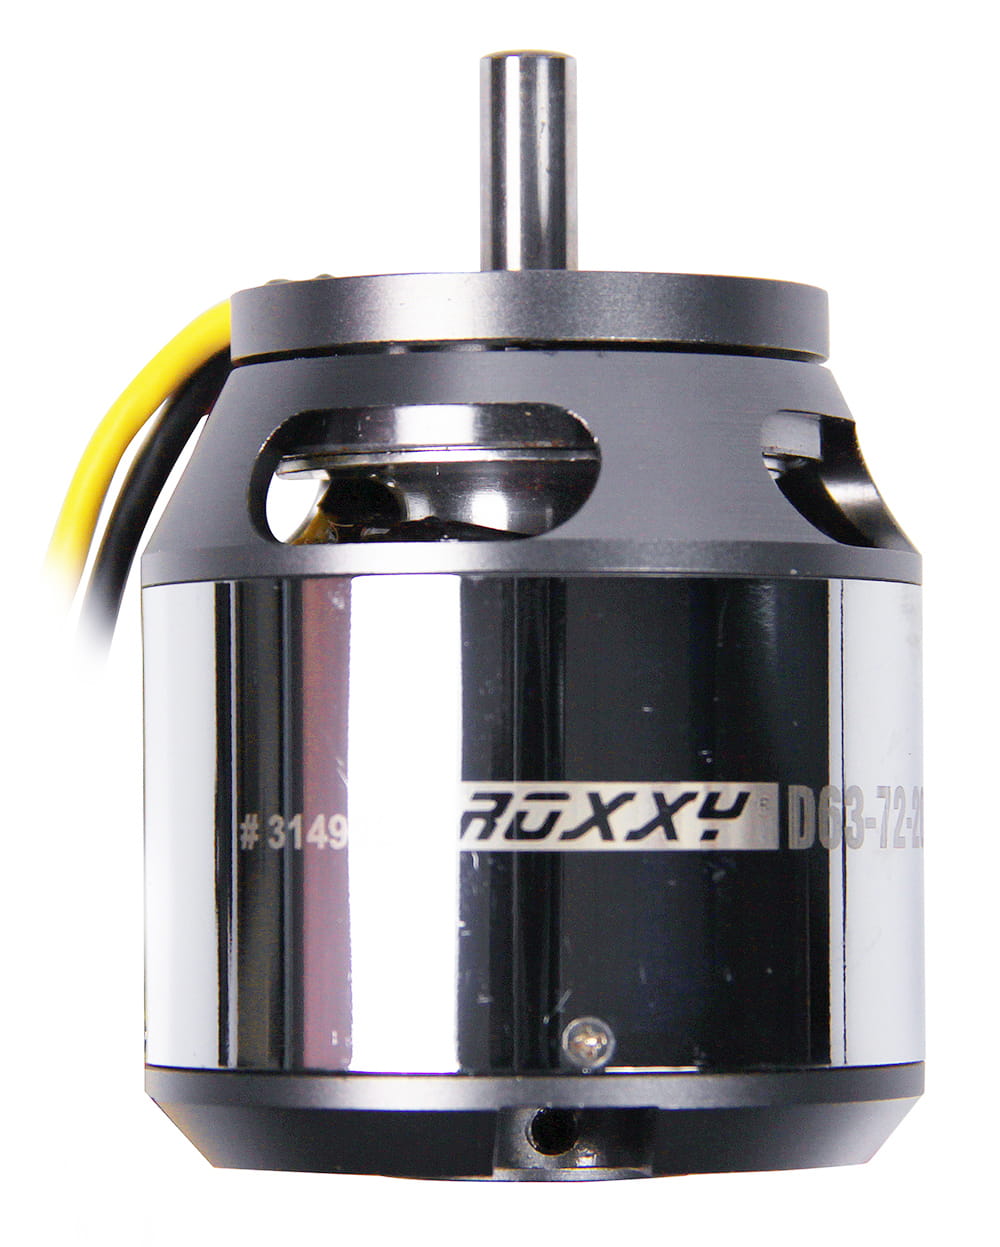 Multiplex ROXXY Brushless Motor BL Outrunner D63-72-200kV Air